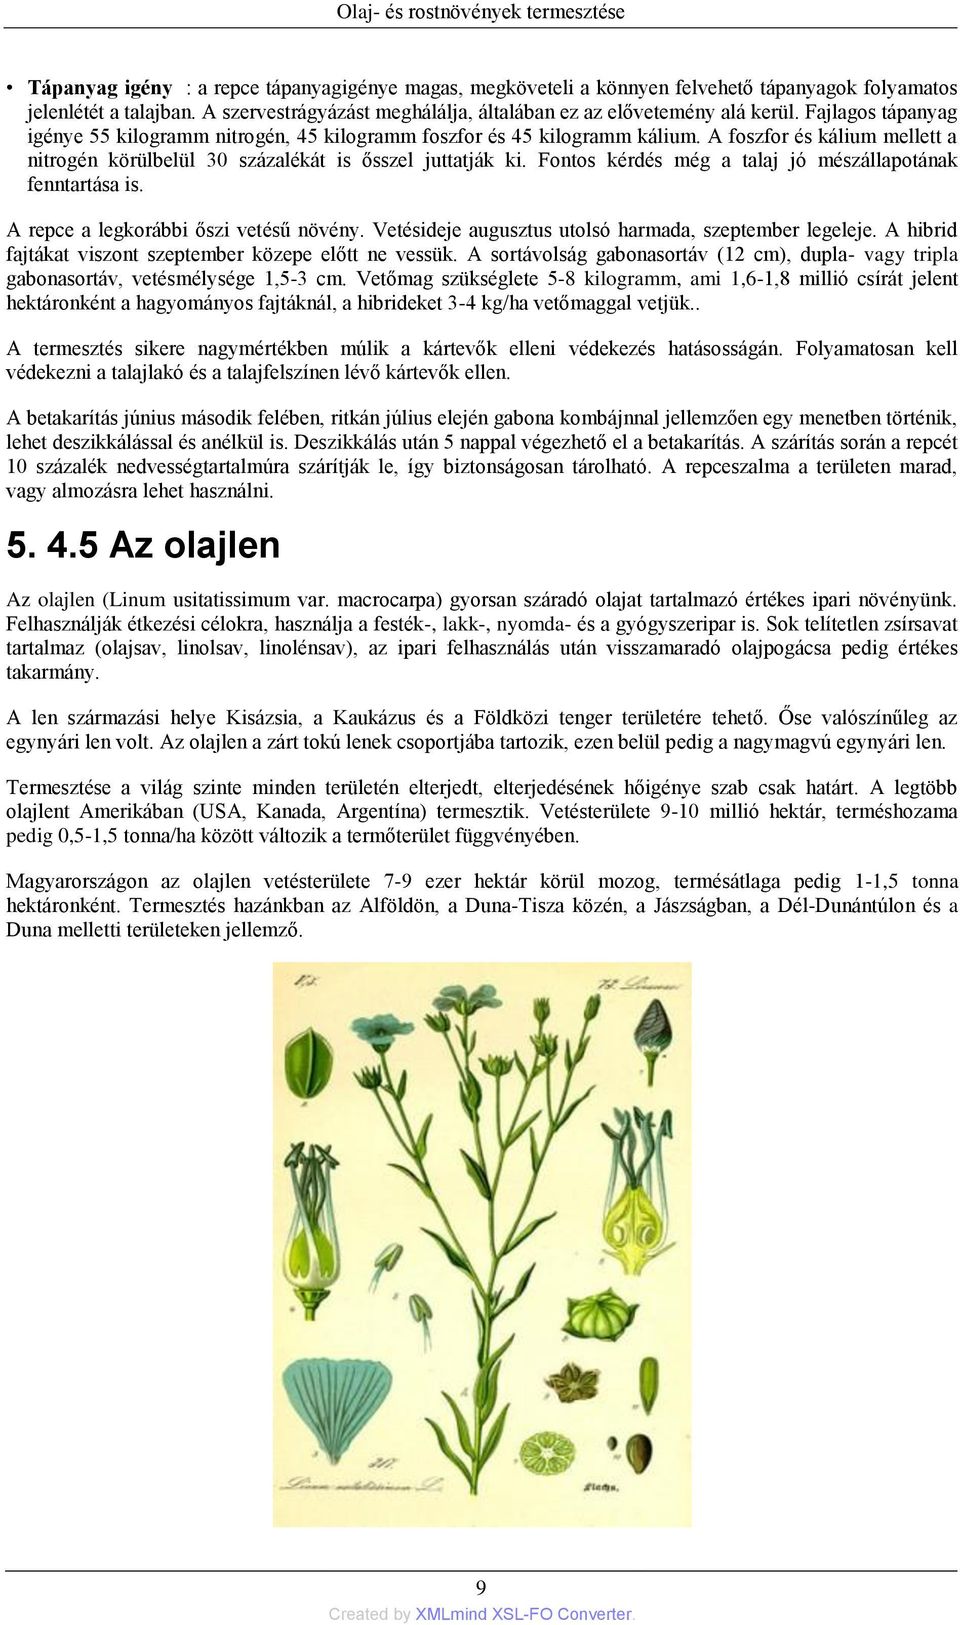 Növény- és állattani ismeretek 4. - PDF Ingyenes letöltés